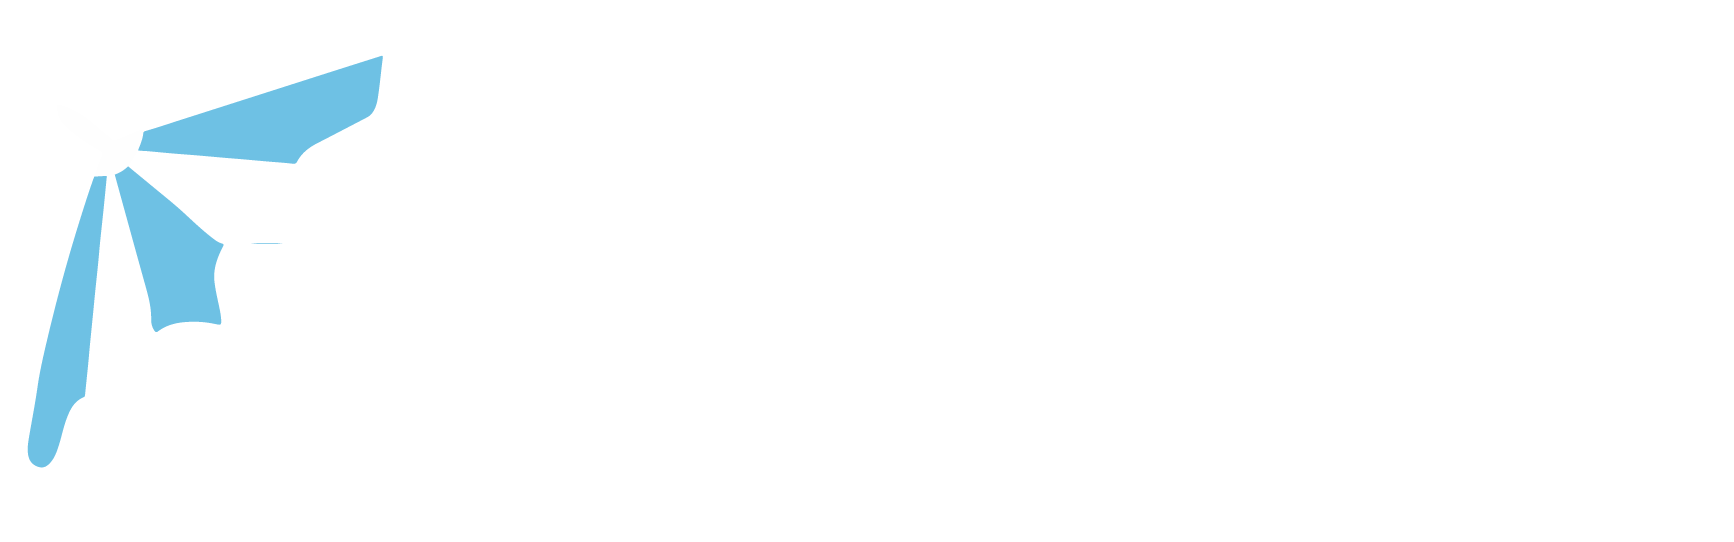 full service hosting logo